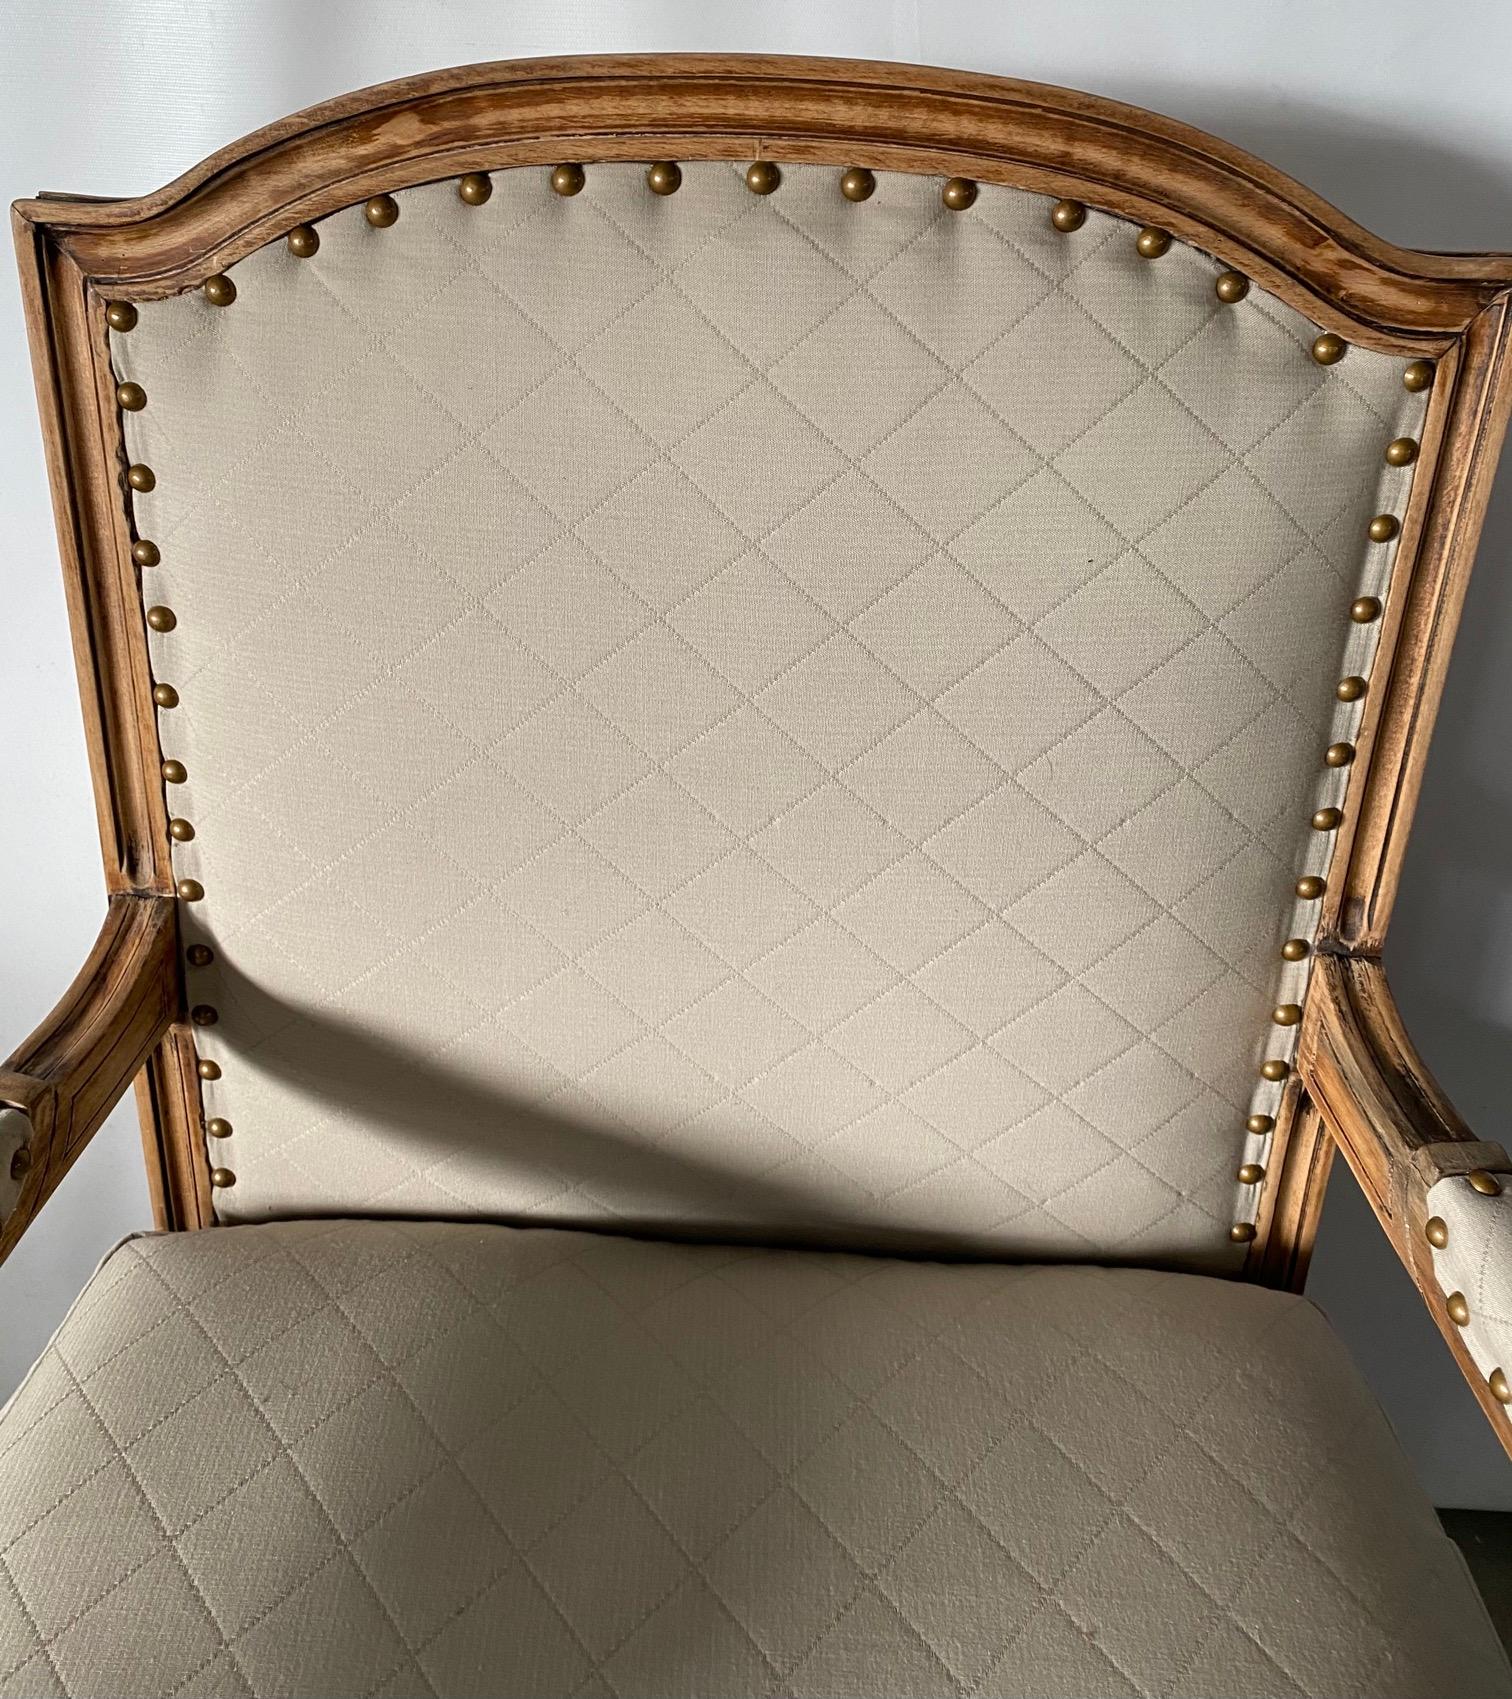 Eleganter französischer Sessel im Louis XVI-Stil mit Rahmen aus gebleichtem Holz, kannelierten Beinen und kubischen Blöcken, die mit Röschen verziert sind, gepolstert in klassischem beigefarbenem Stoff. Geeignet für Esszimmer- oder